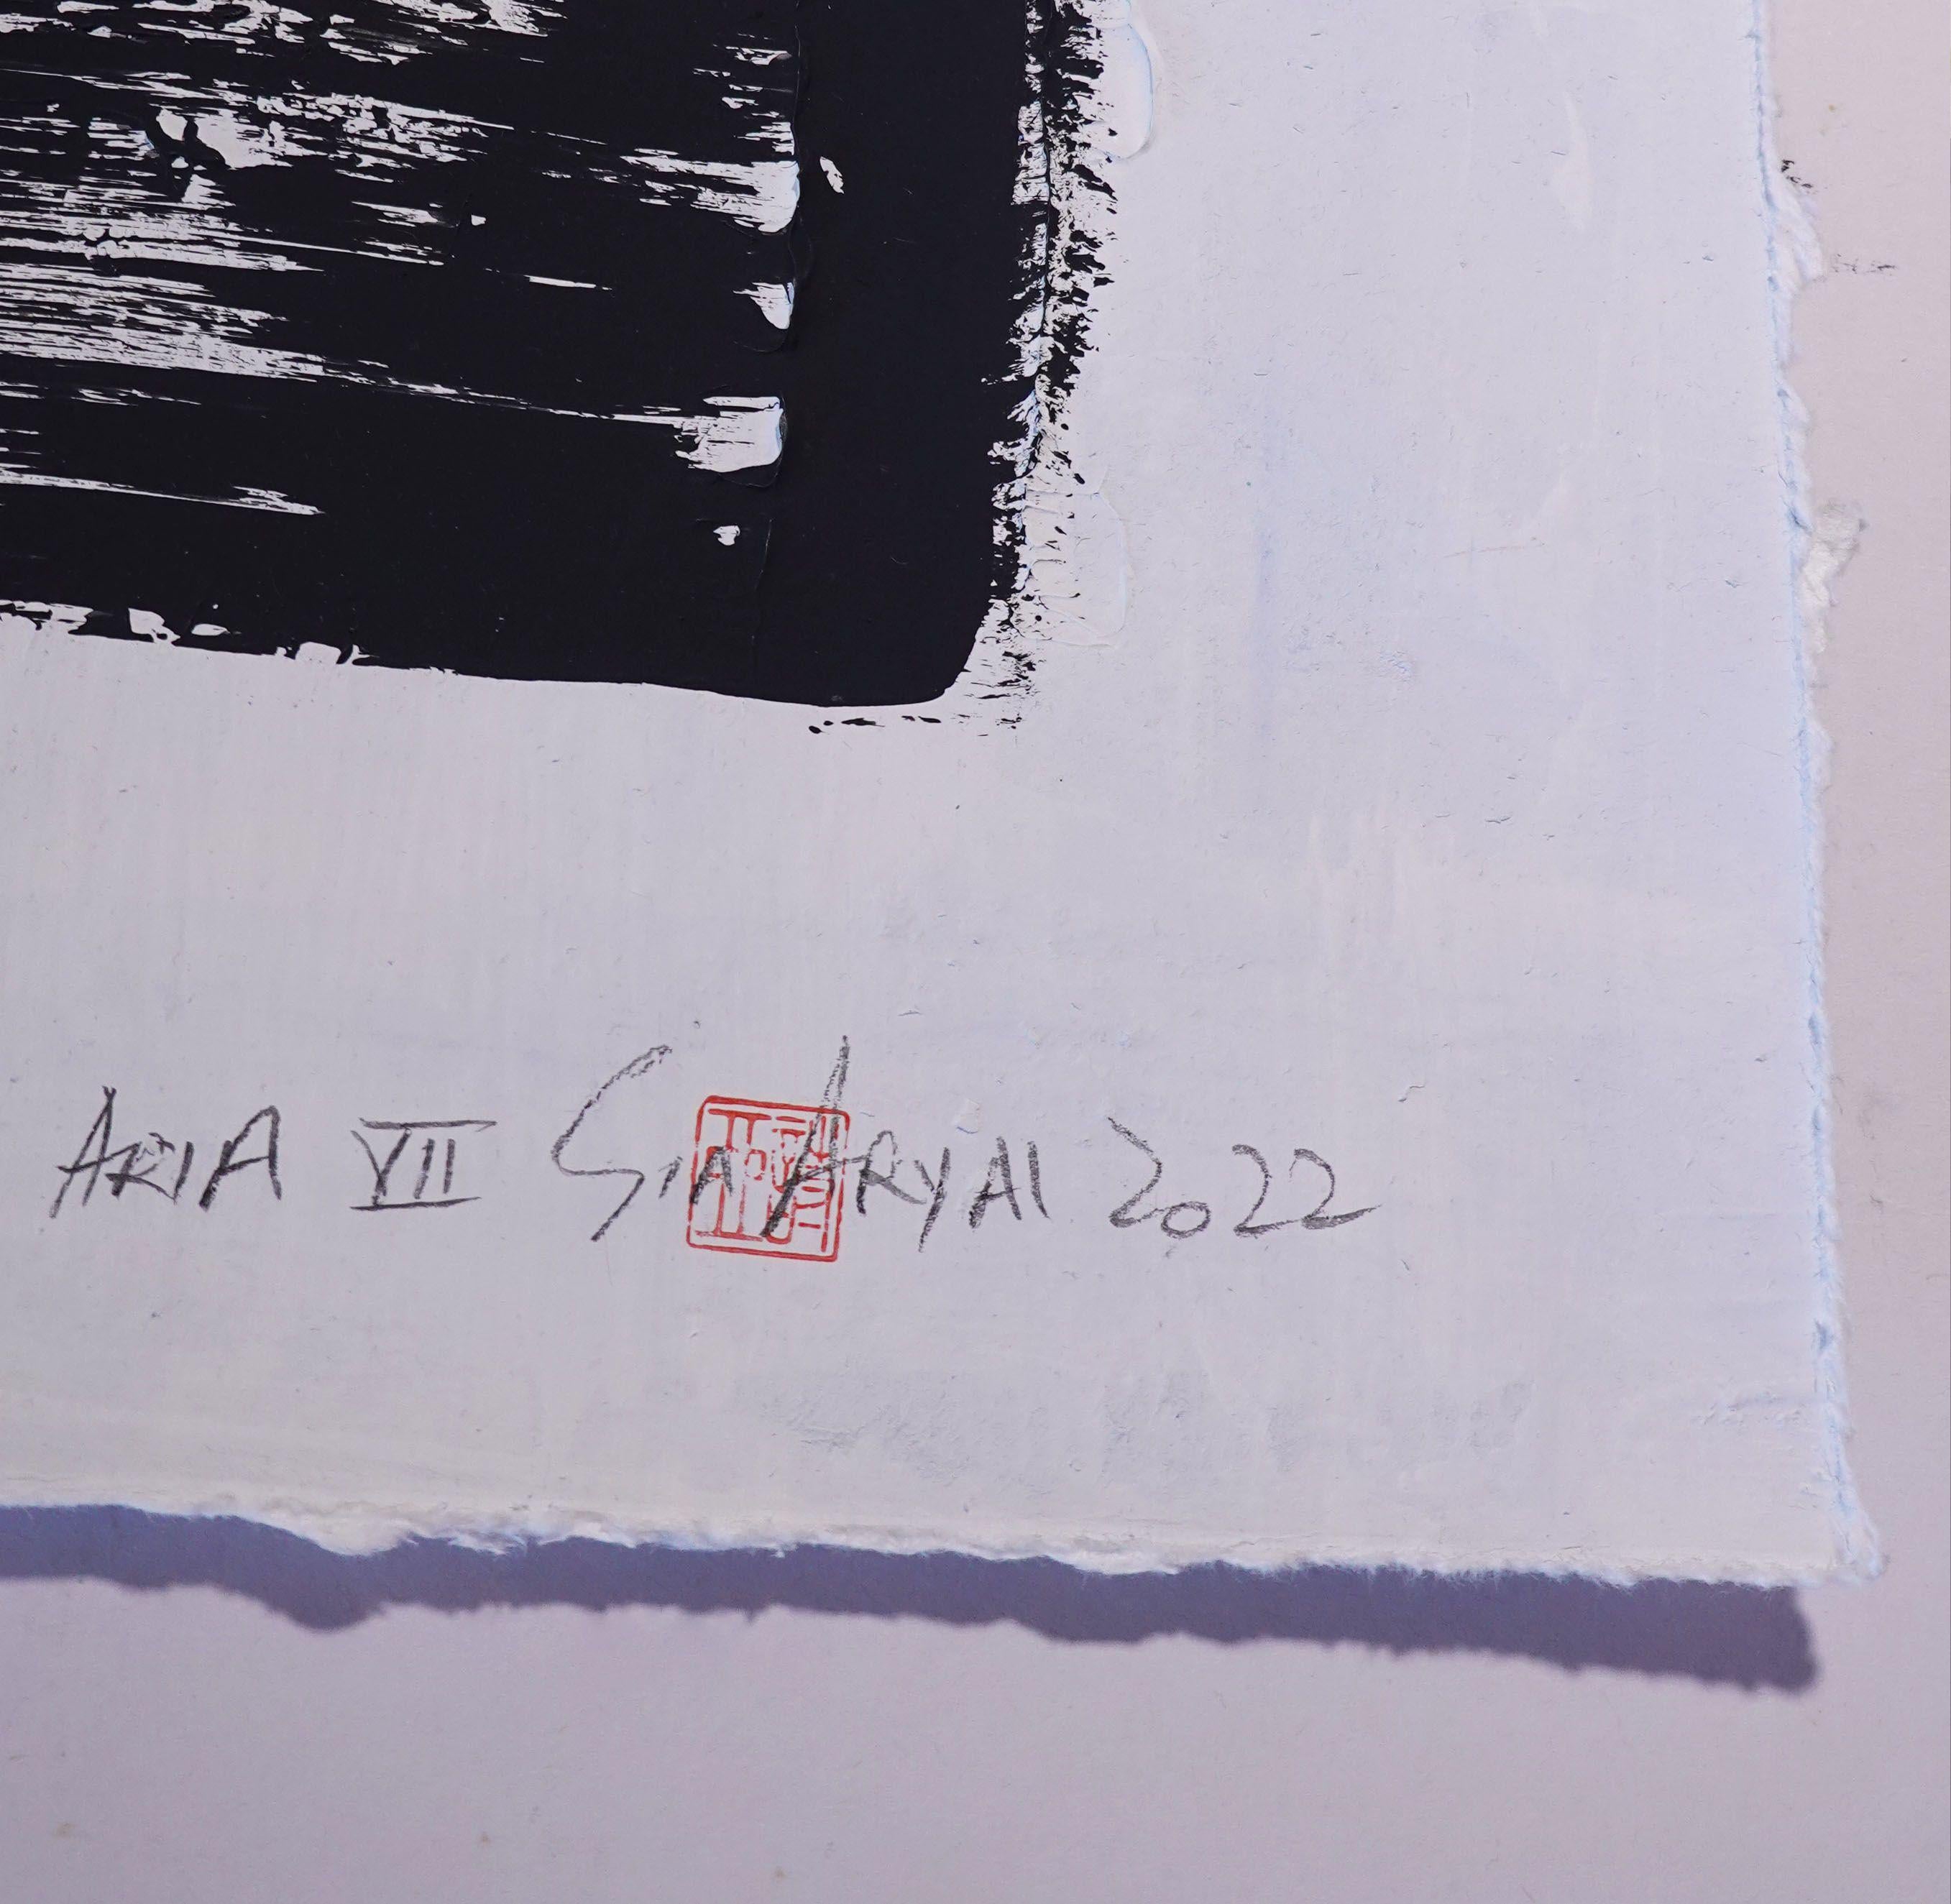 ARIA. VII  Peinture abstraite encadre en noir et blanc, peinture, acrylique sur papier - Surréalisme Painting par Sia Aryai